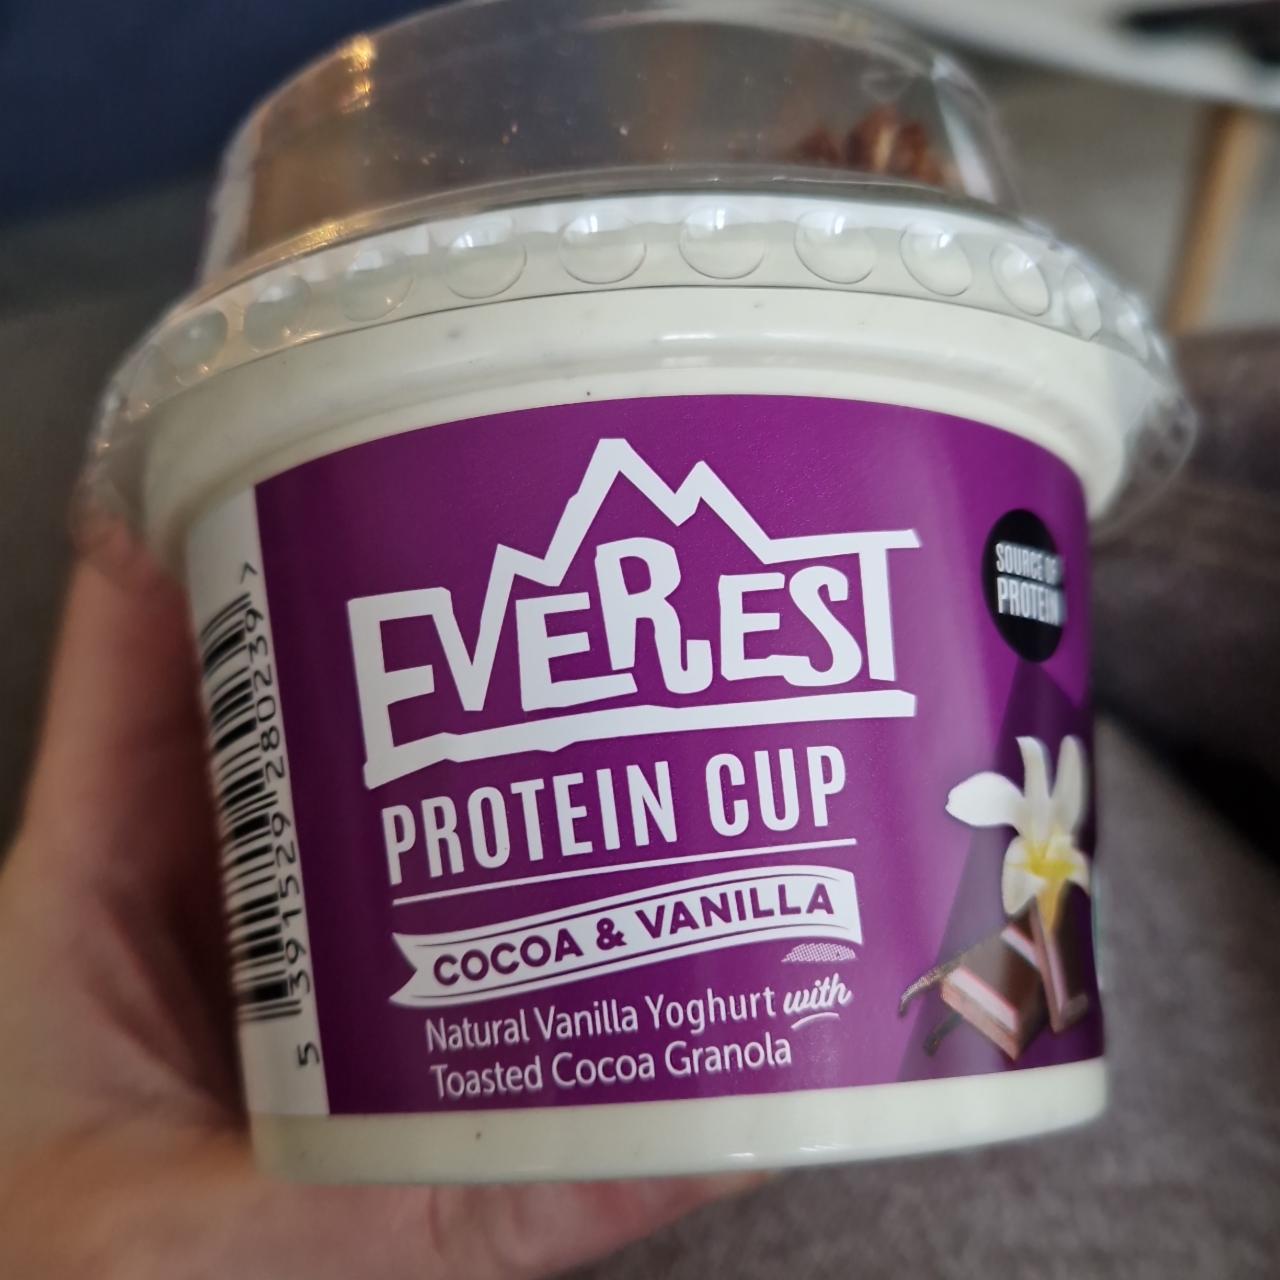 Fotografie - Protein cup Cocoa & Vanilla Everest